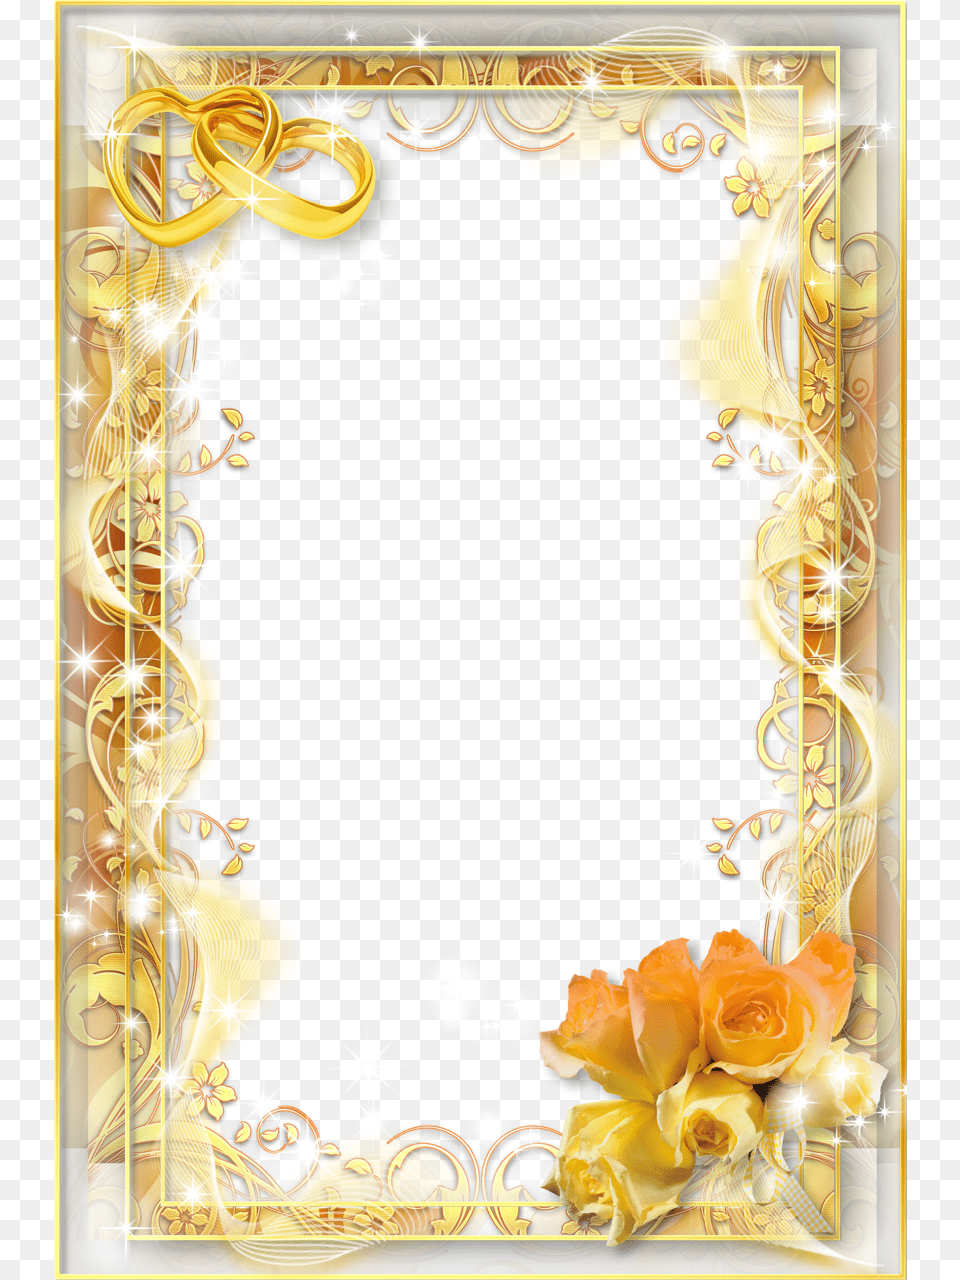 Wedding, Art, Floral Design, Flower, Graphics Free Transparent Png